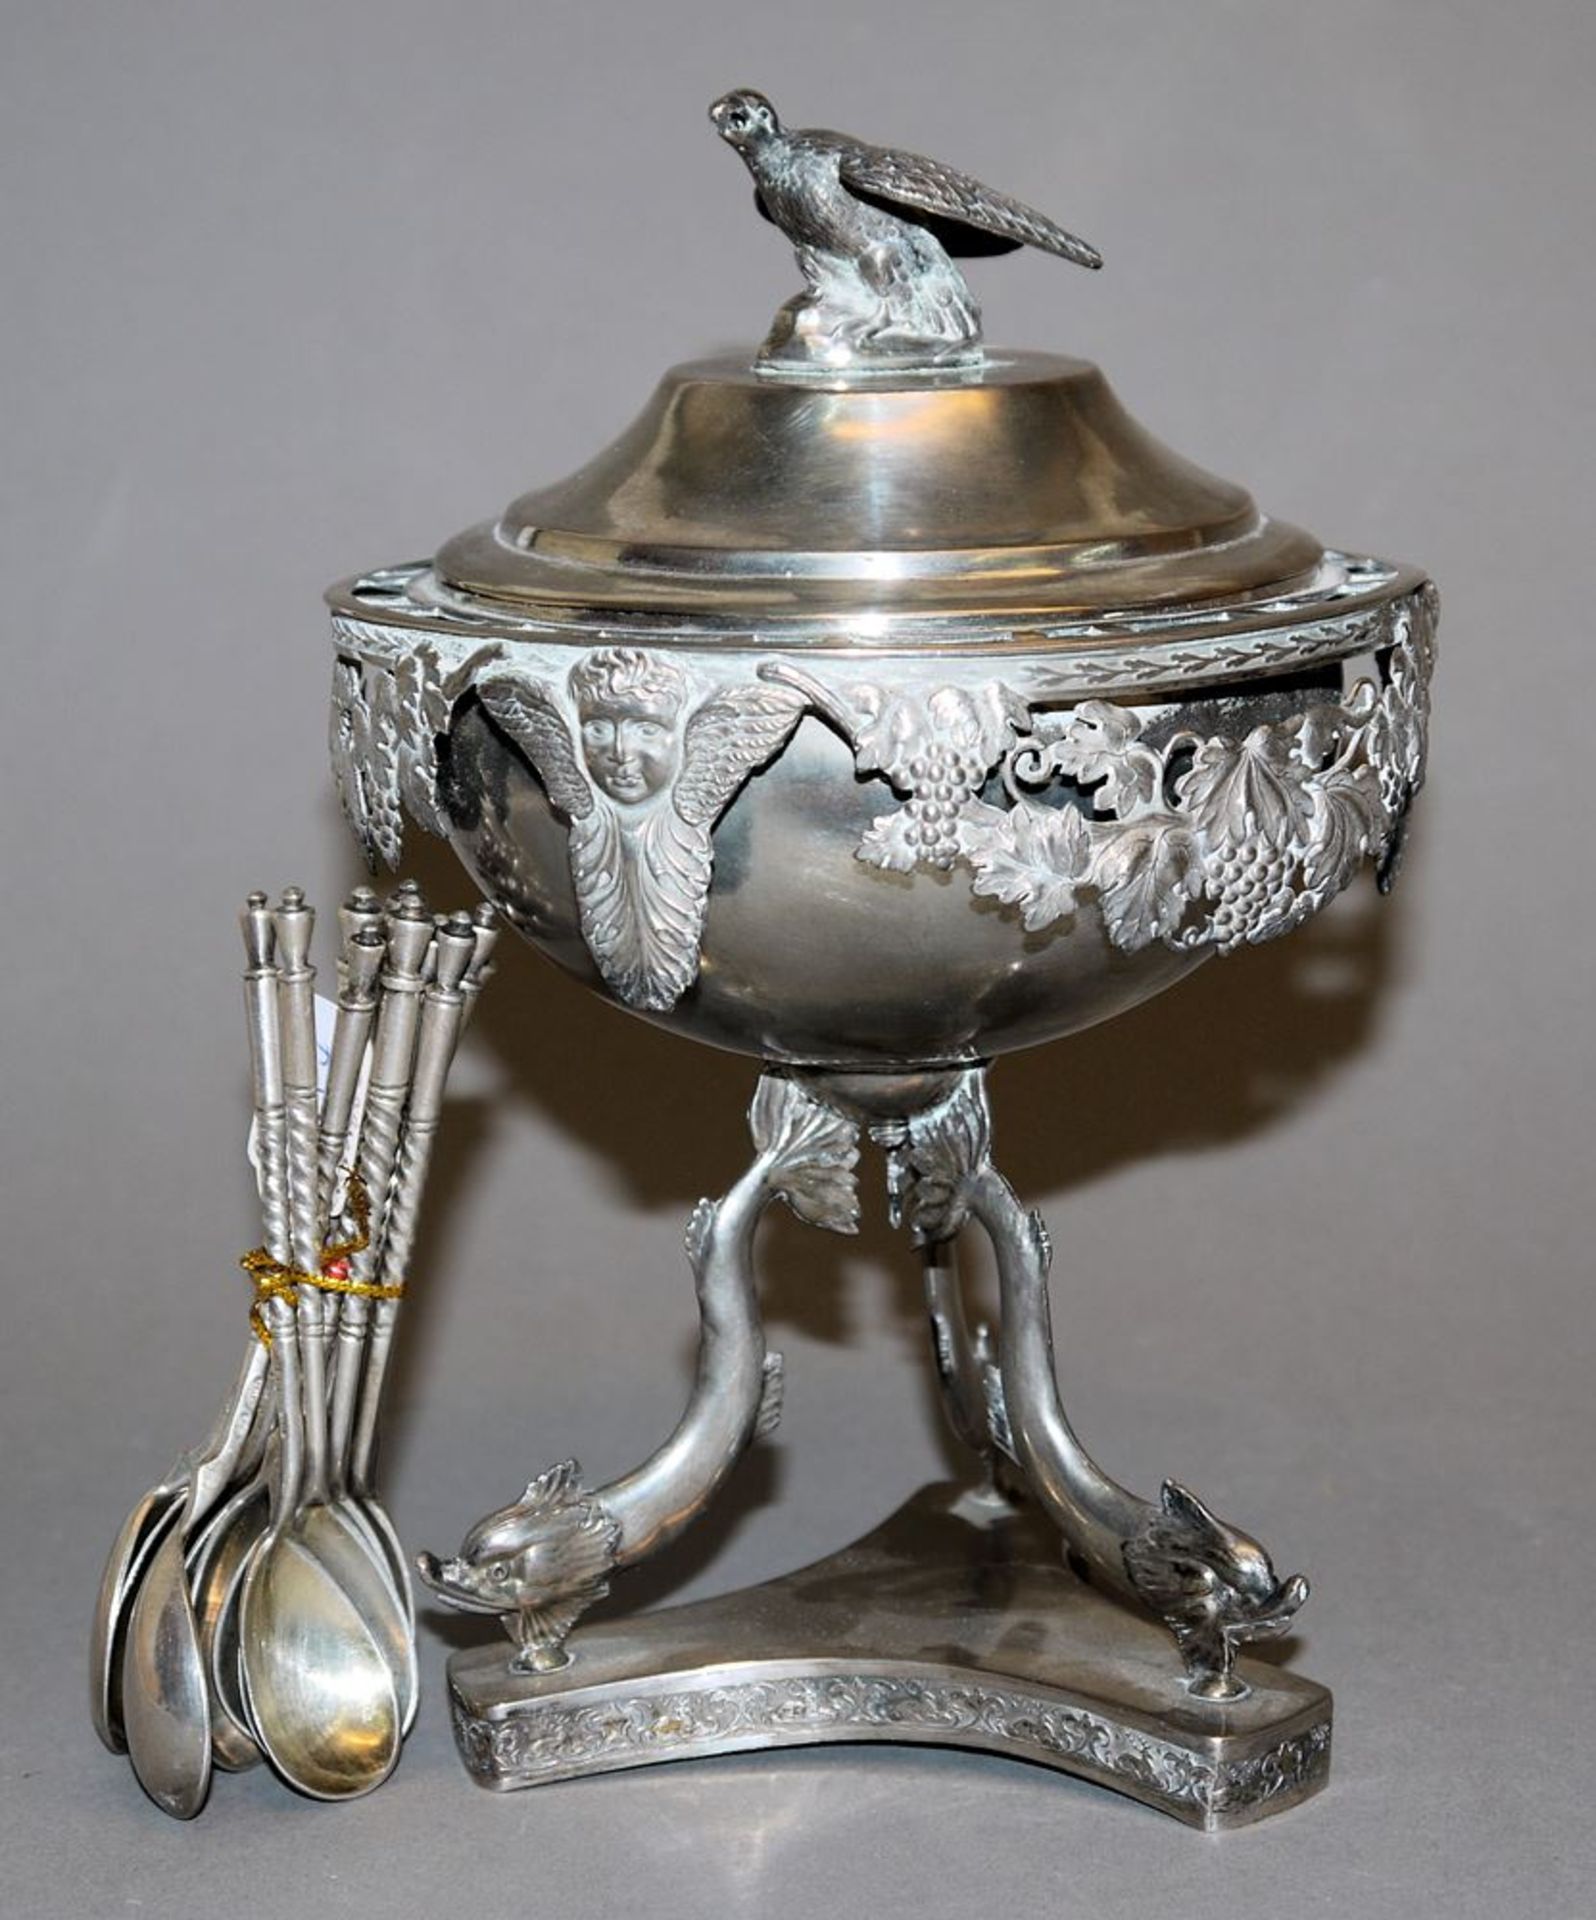 12 Silber-Teelöffel, Moskau um 1880 & Kaviarschale um 1820, Silber/ versilbert